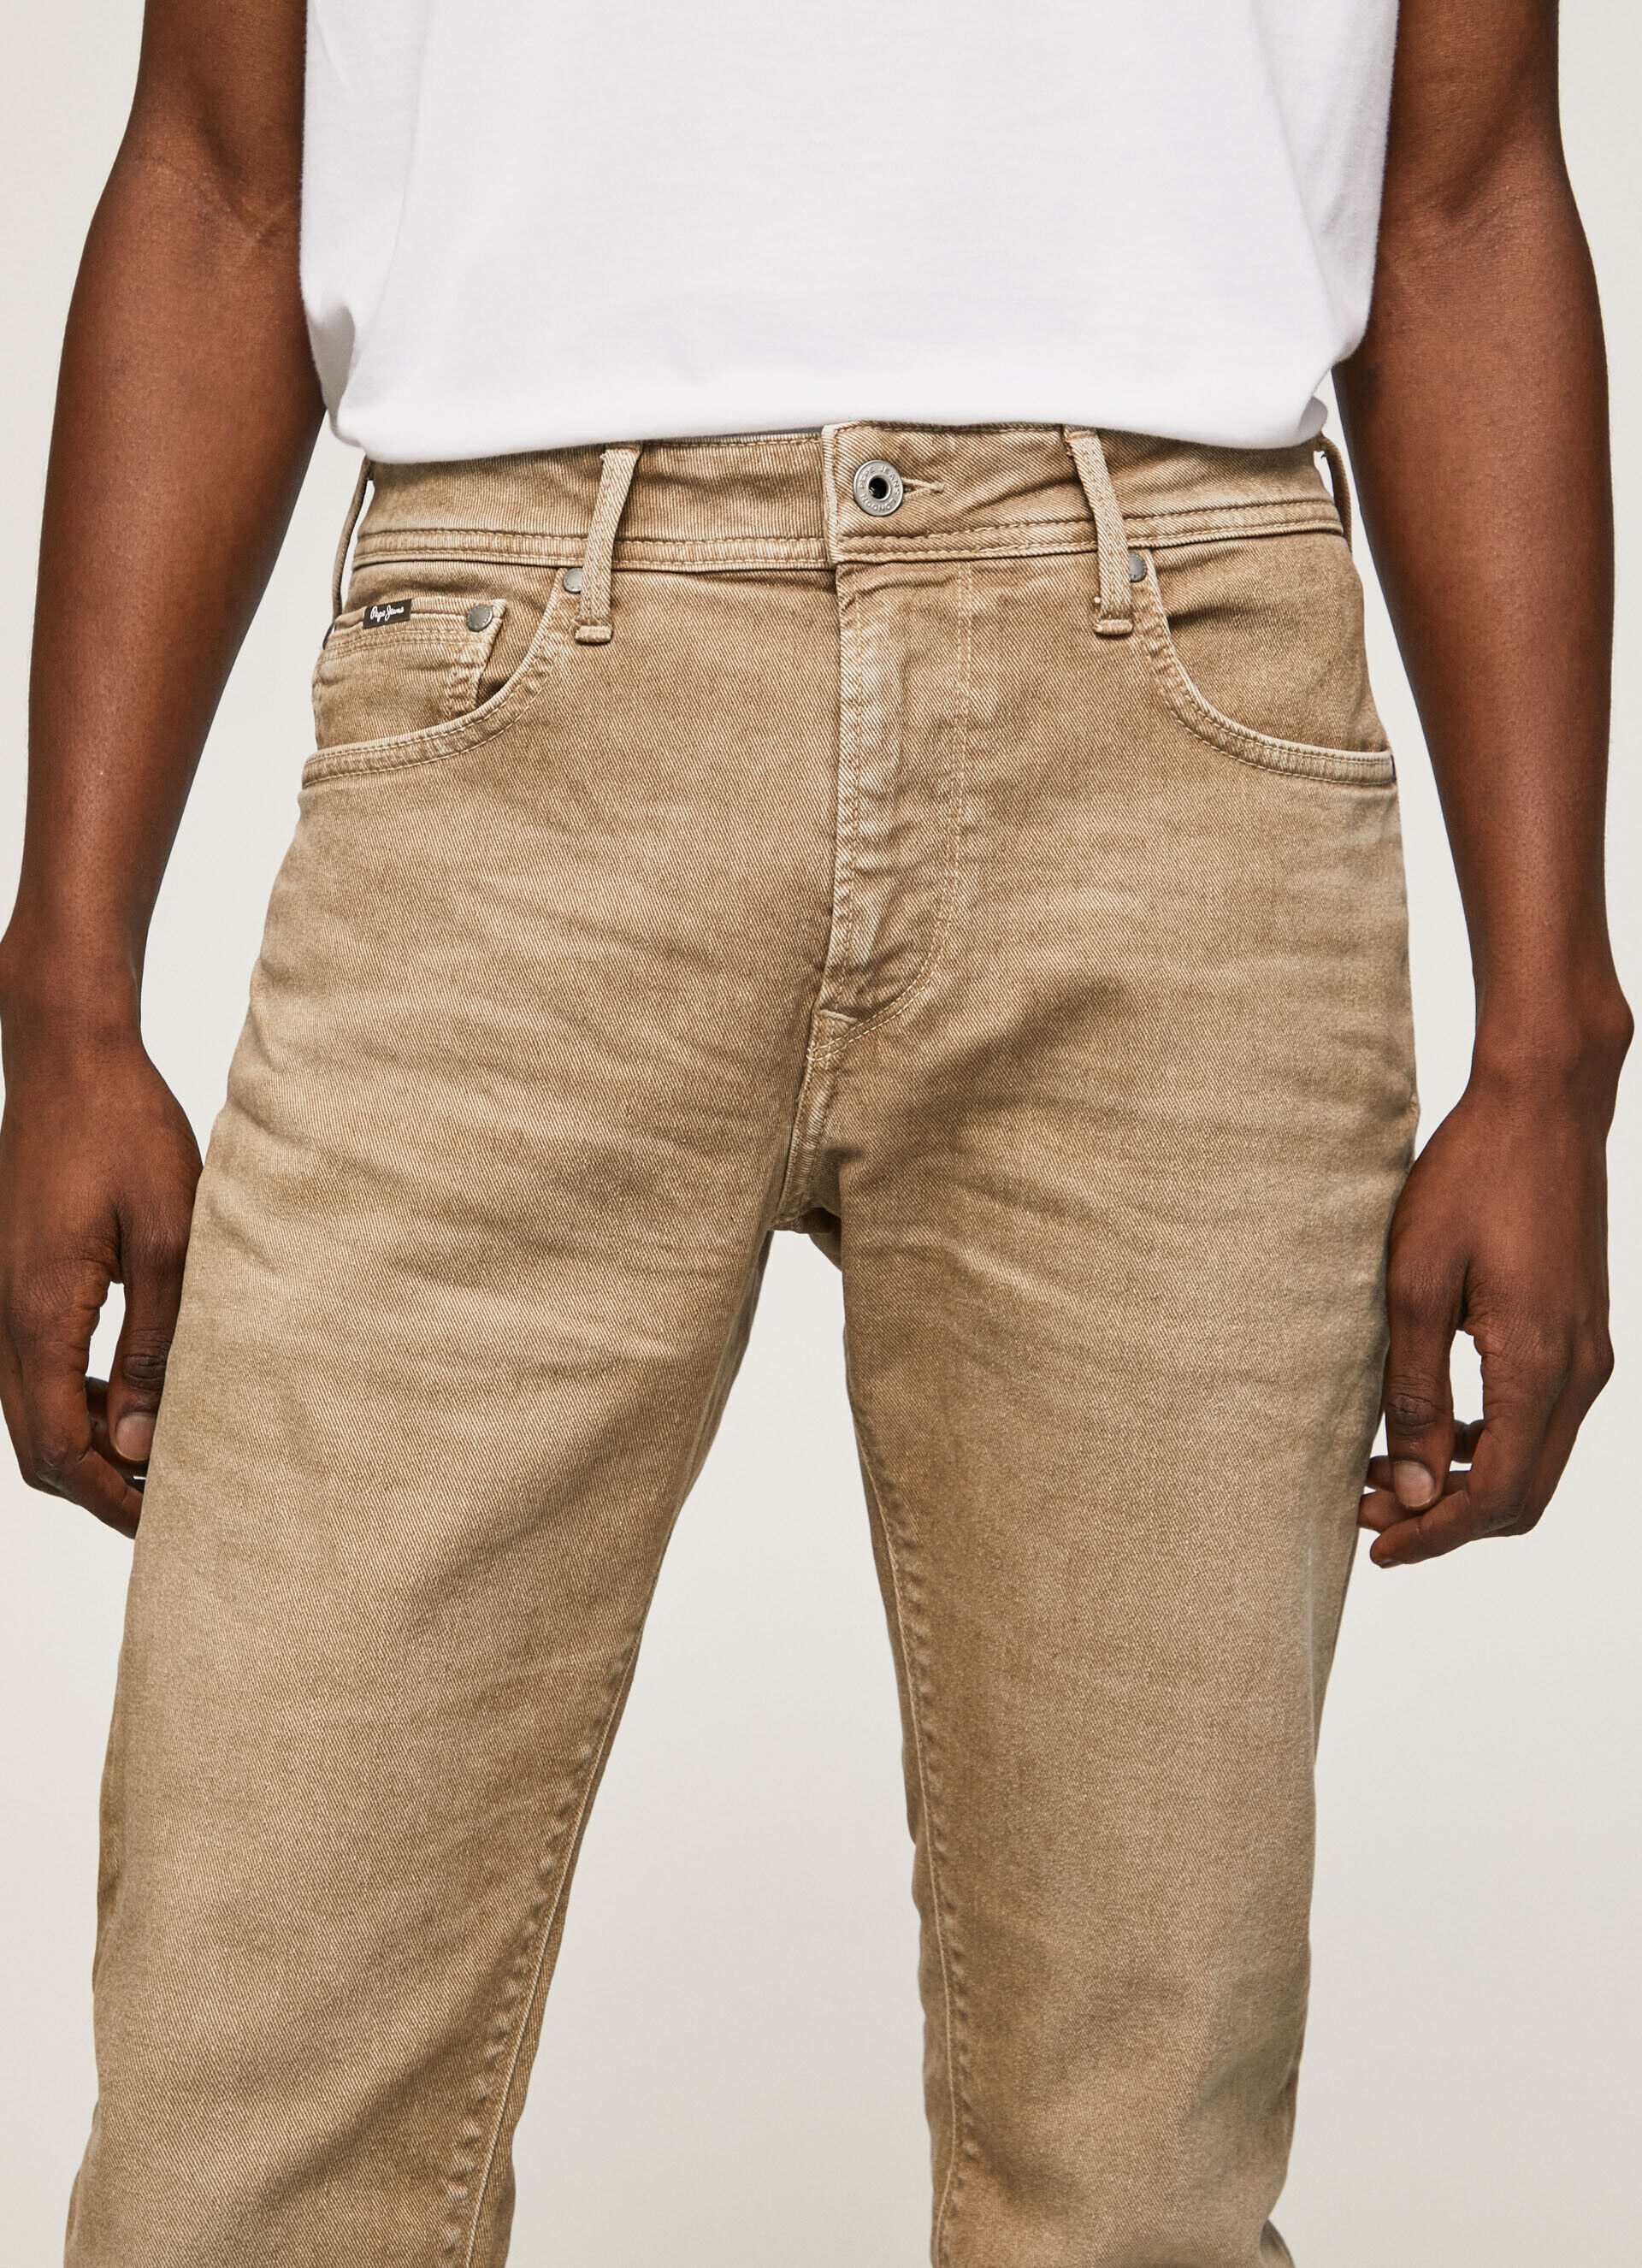 Impackt Mens Basic 5 pocket jeans with back pocket embroidery  KULTPRIT